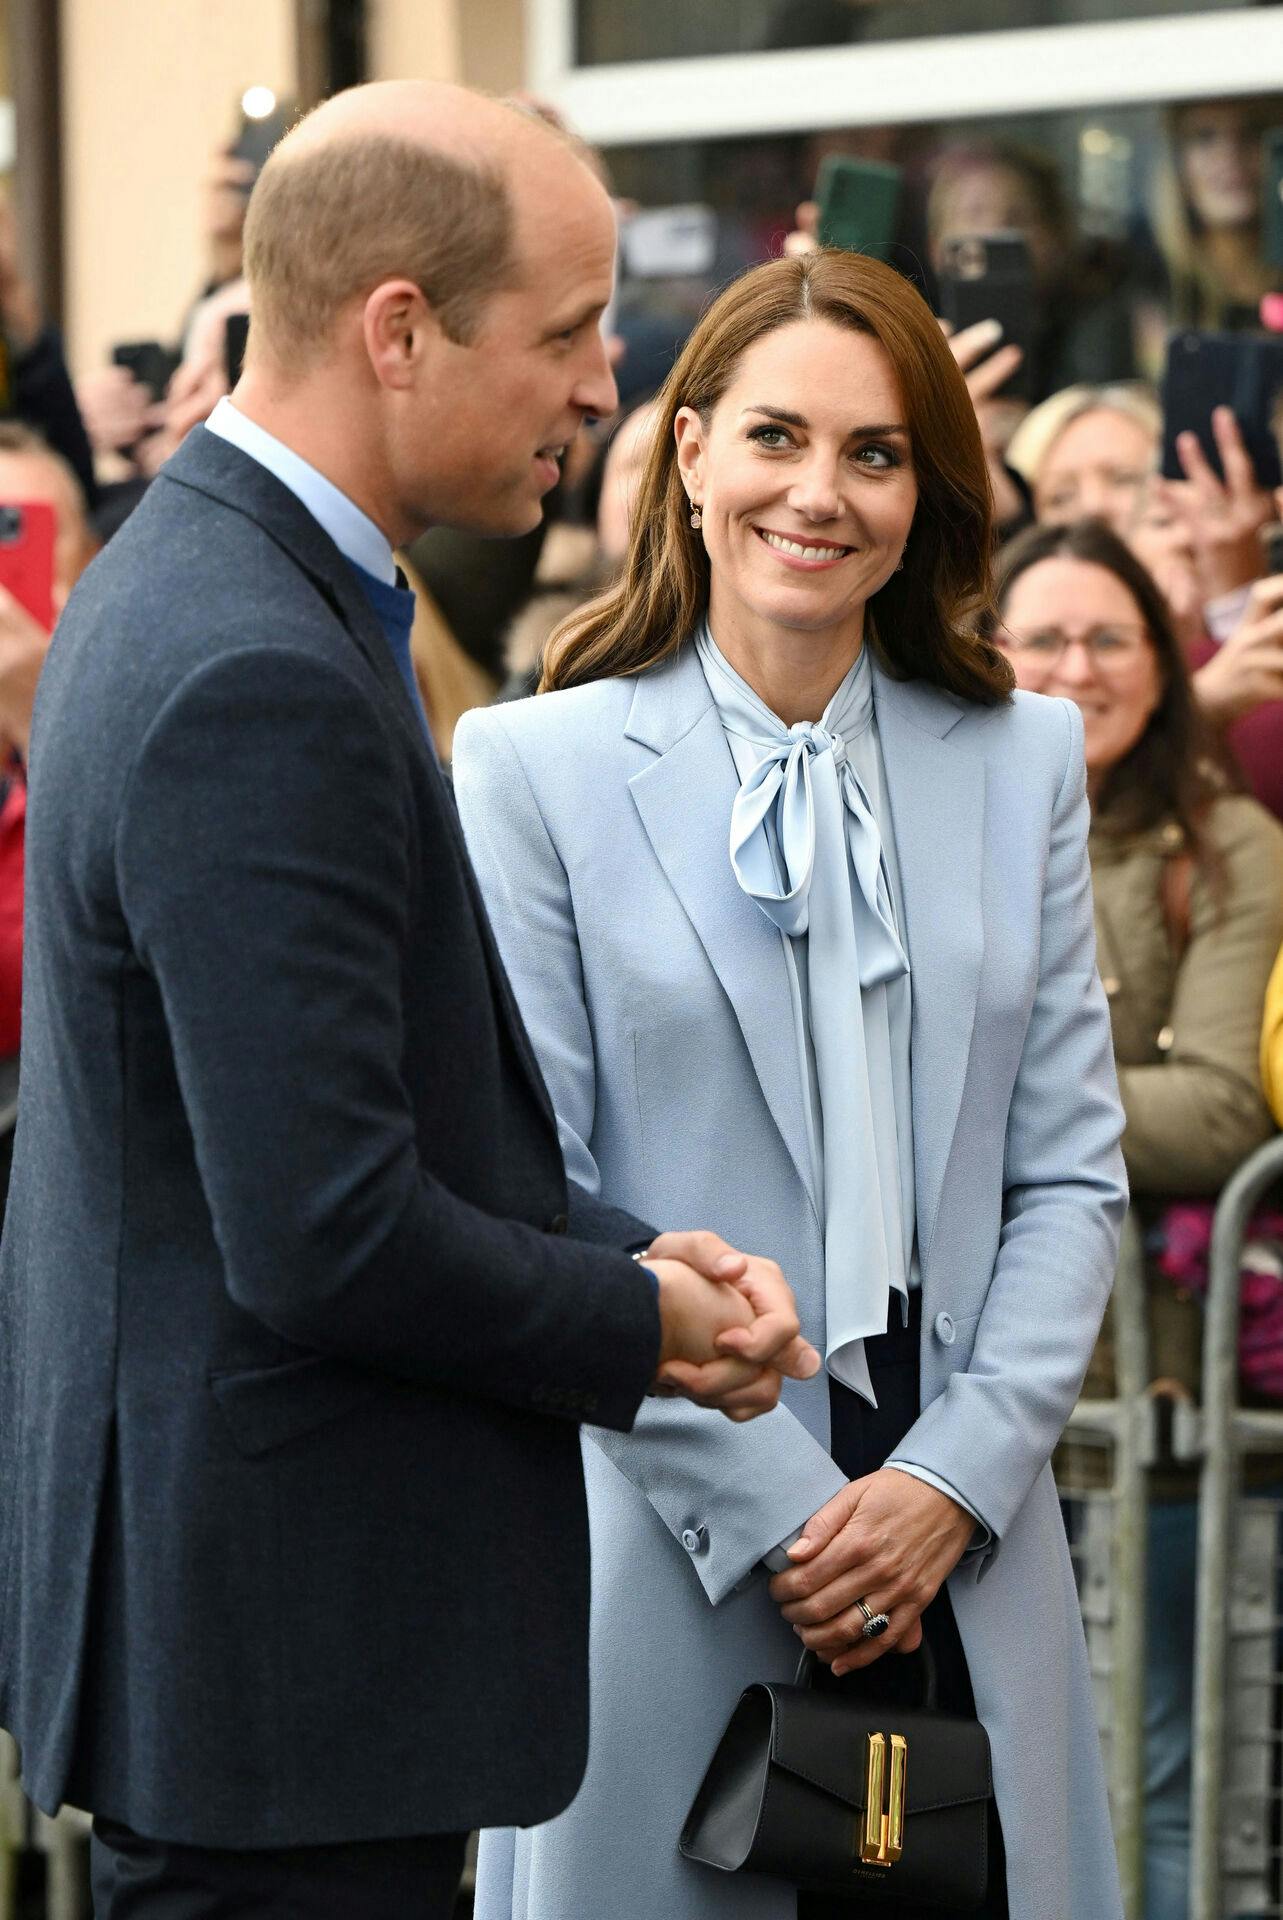 Prøver Kate at udtænke et nyt skalde-kaldenavn til William?